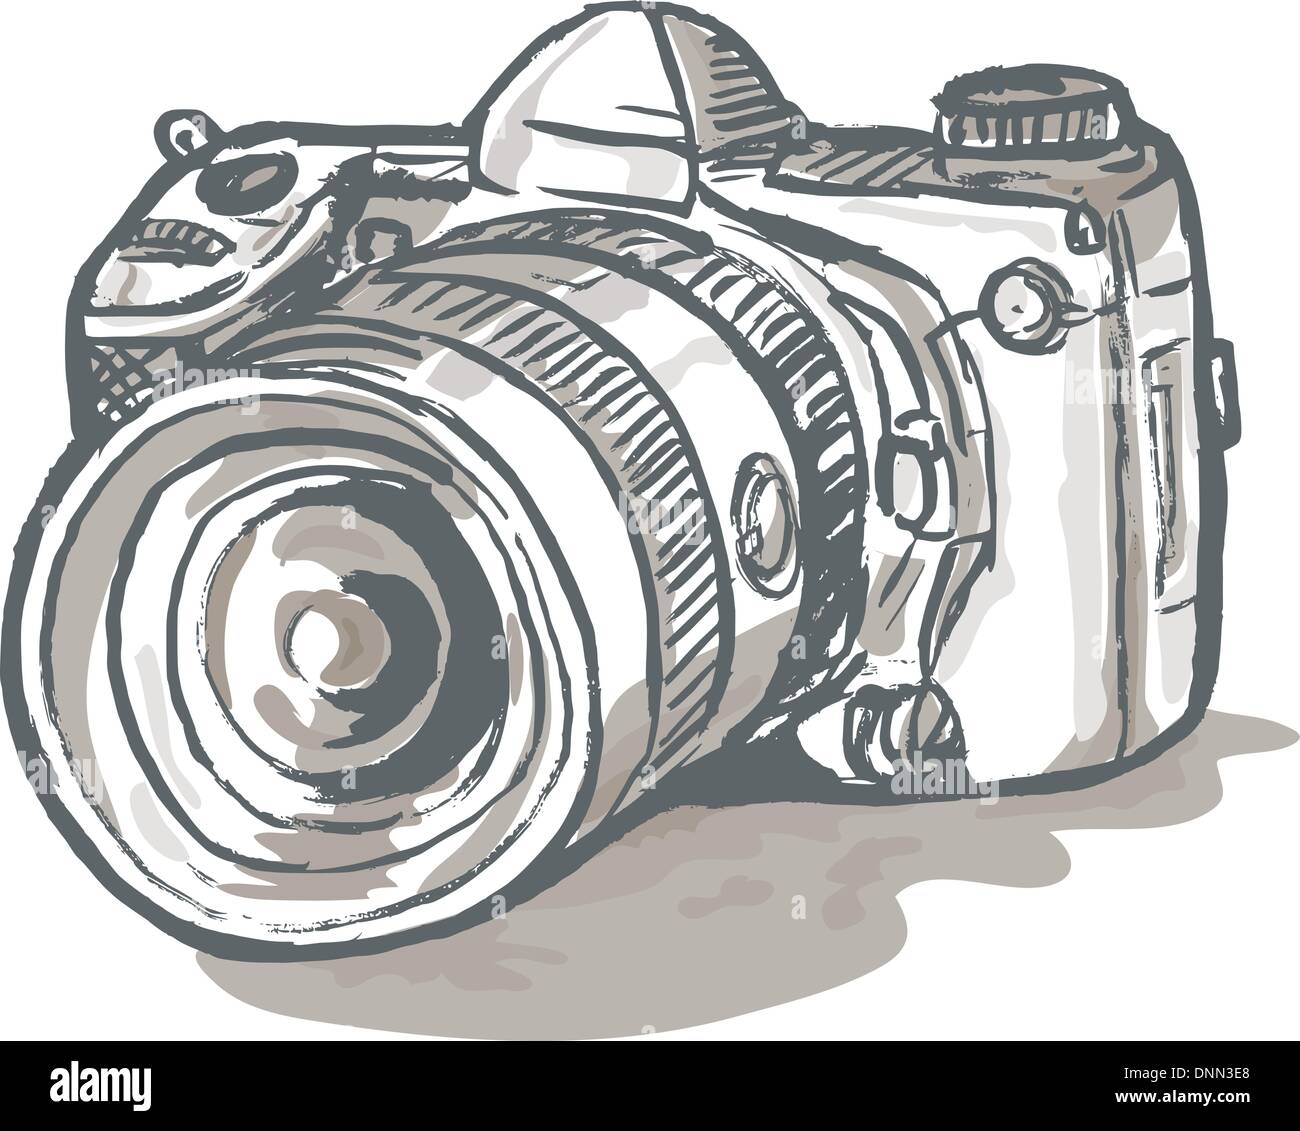 Dibujar A Mano Esbozo De La Cámara Digital De Bolsillo Fotos, retratos,  imágenes y fotografía de archivo libres de derecho. Image 76557229